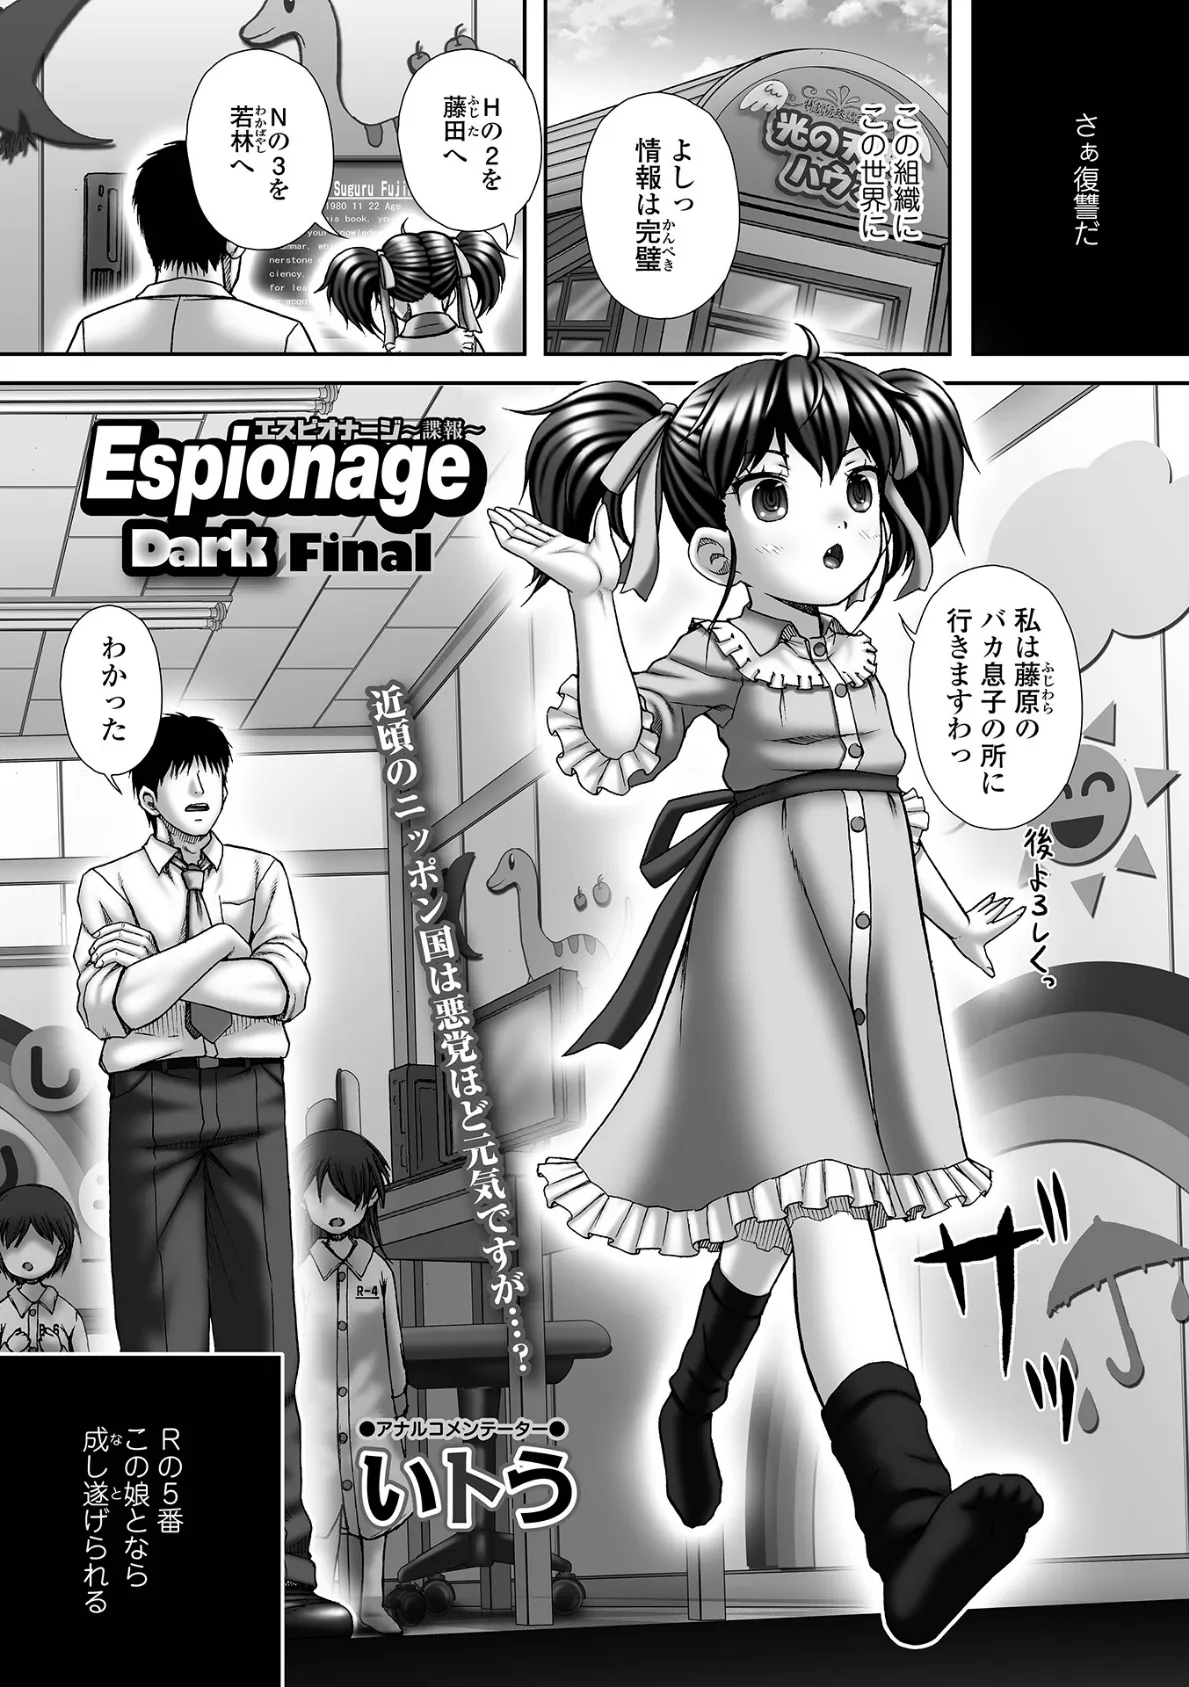 Espionage 〜諜報〜Dark final3 1ページ